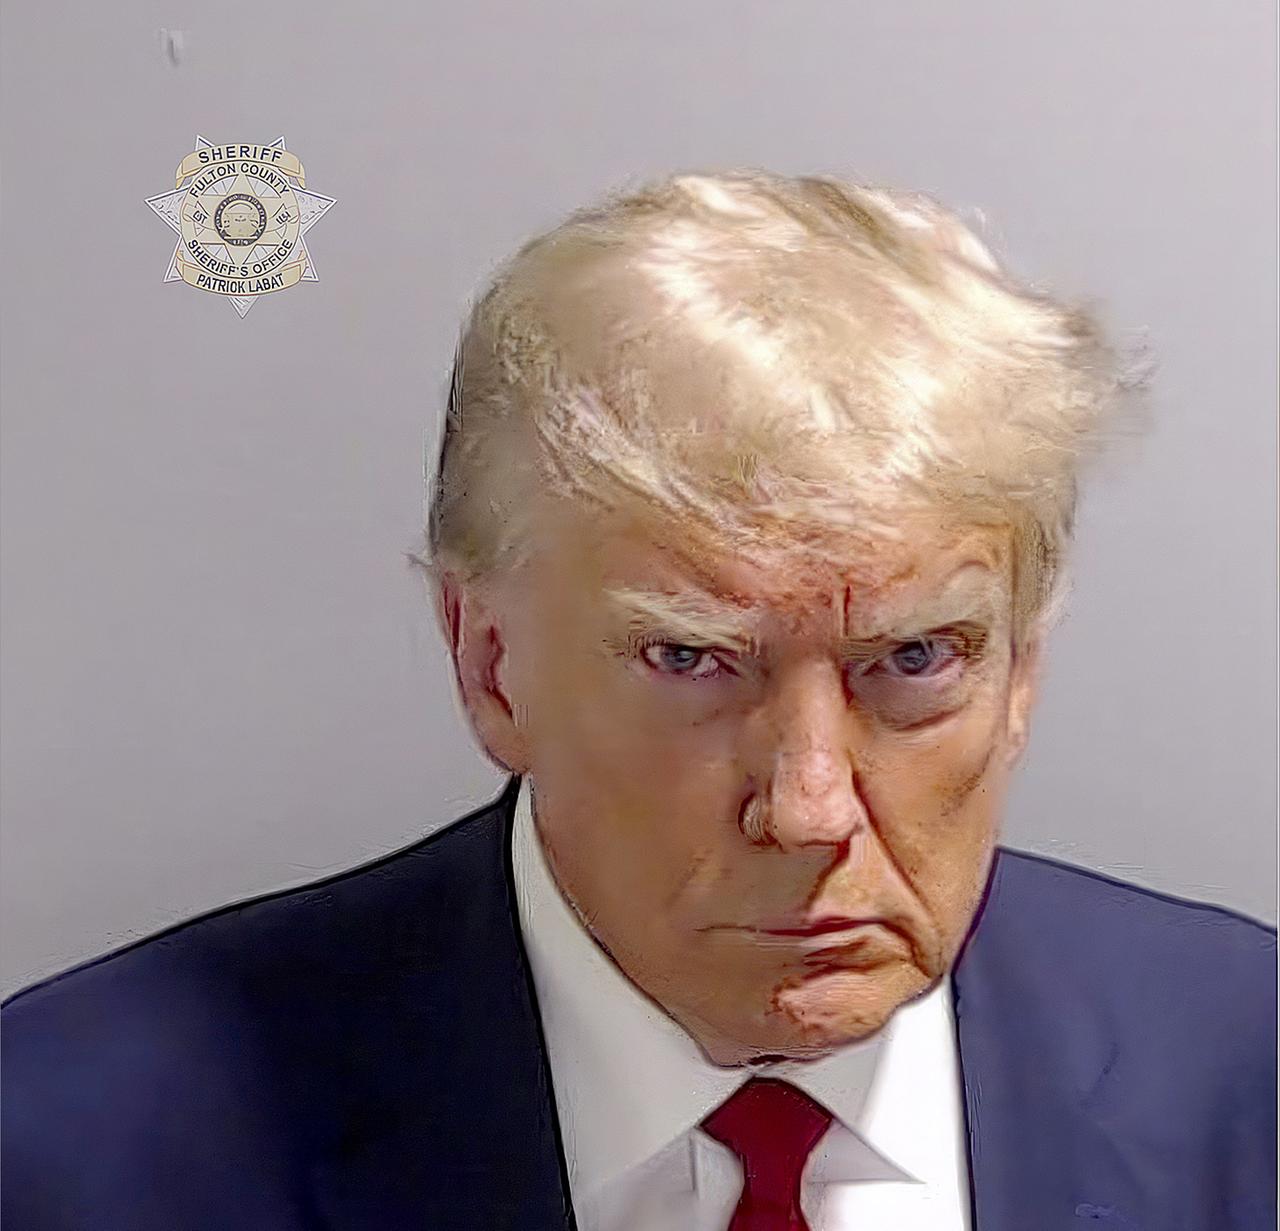 Polizeifoto von Donald Trump